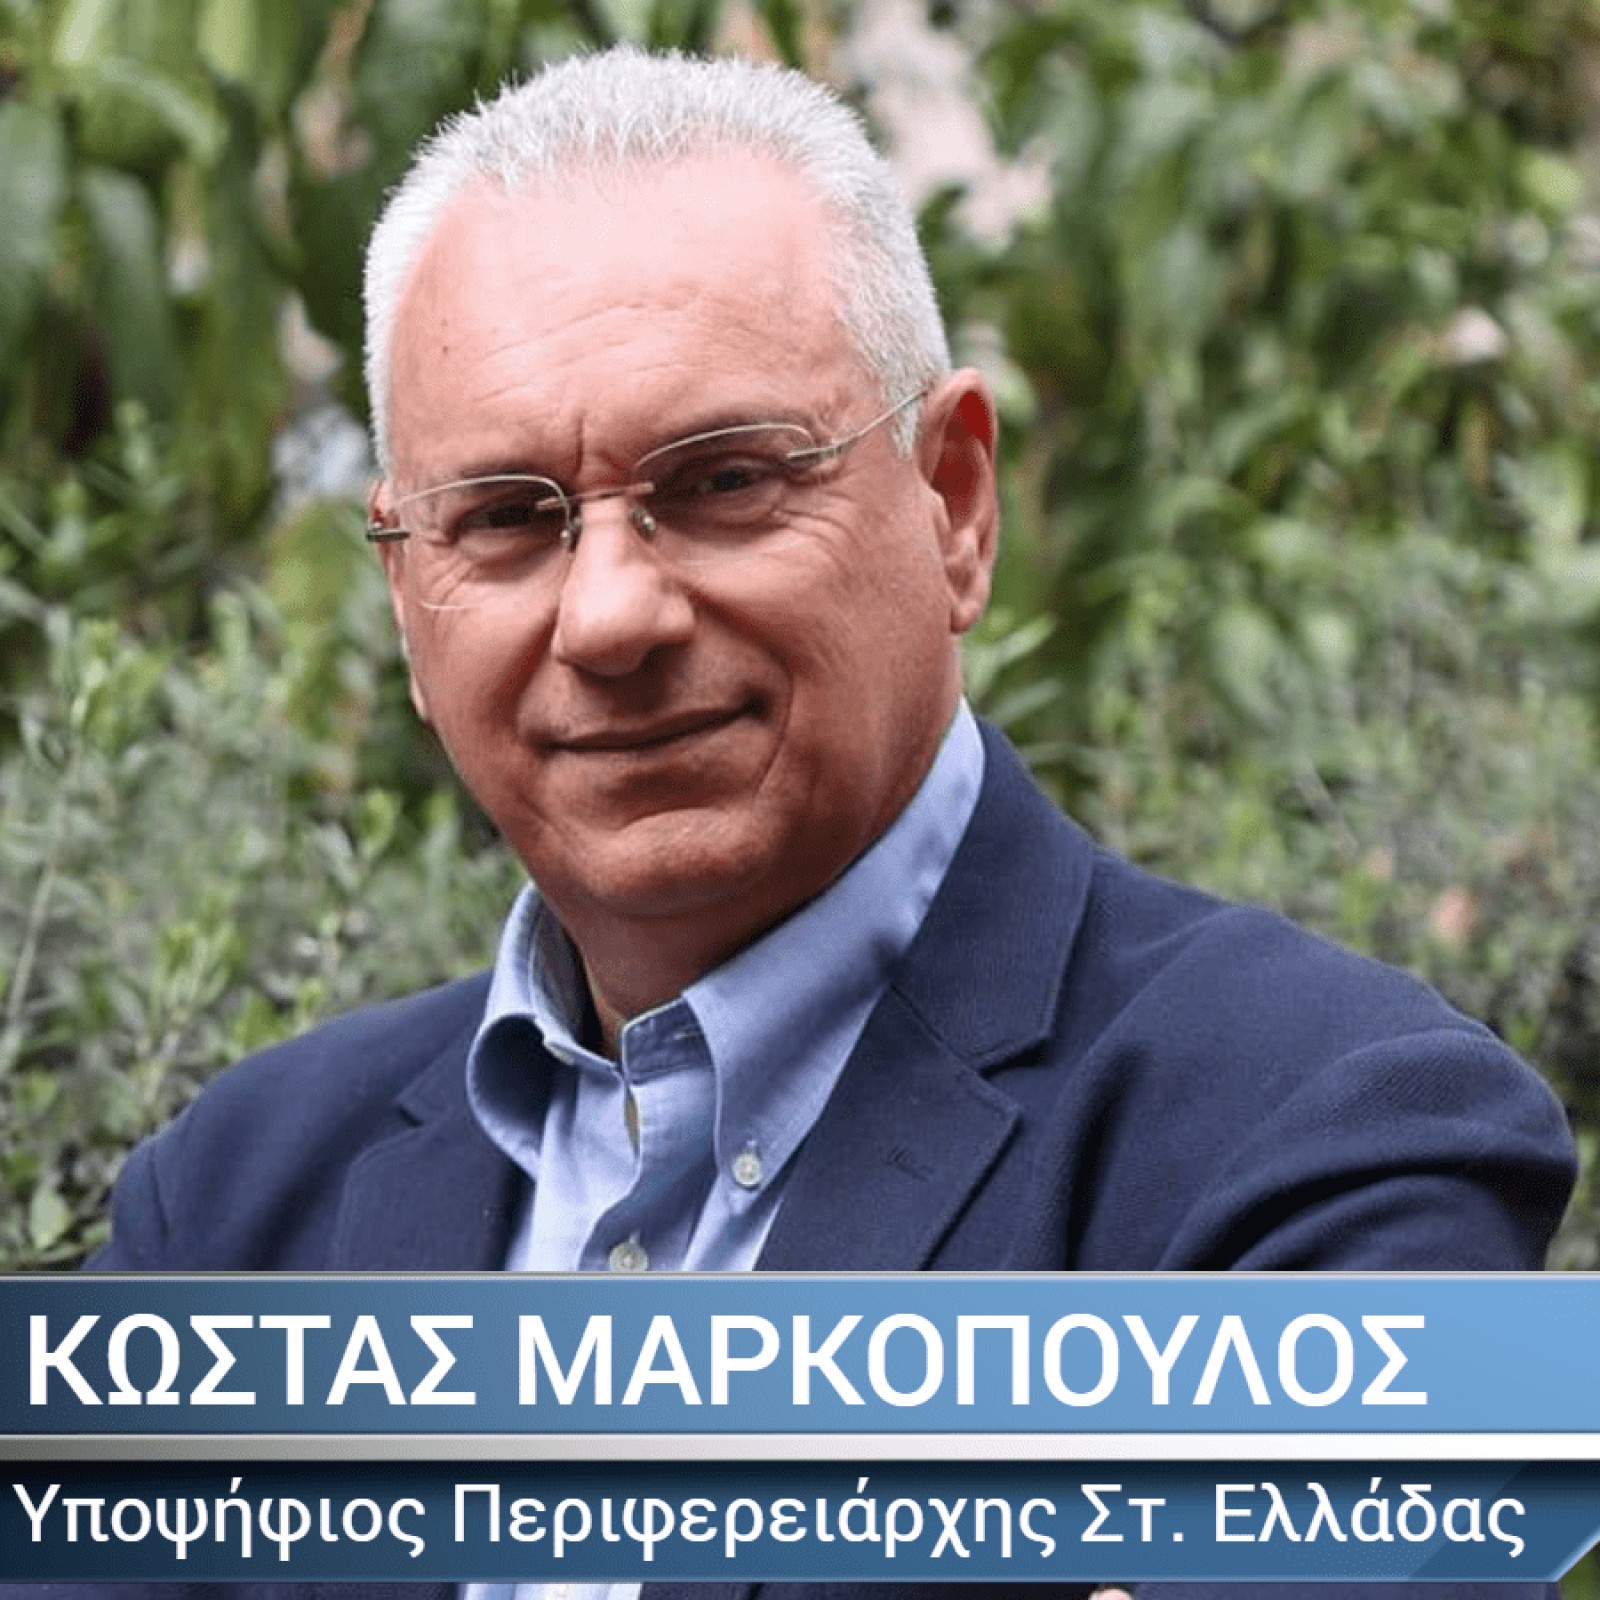 Με ρεαλισμό κατεβαίνει ο Κώστας Μαρκόπουλος για την Περιφέρεια Στερεάς Ελλάδας